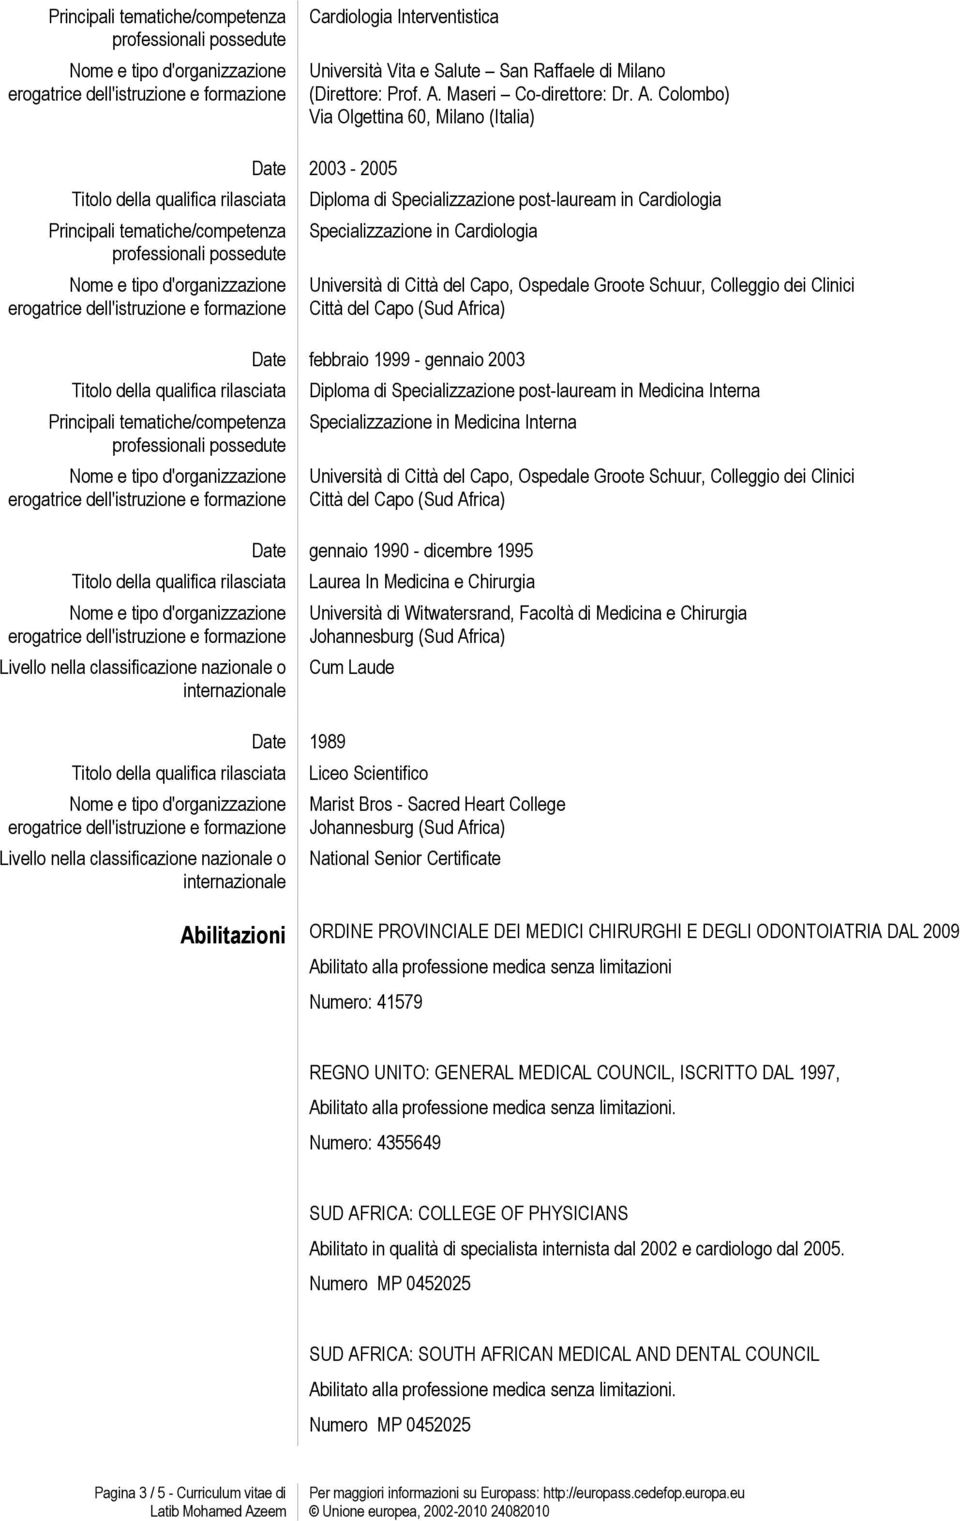 Colombo) Via Olgettina 60, Milano (Italia) Principali tematiche/competenza Principali tematiche/competenza Livello nella classificazione nazionale o internazionale Livello nella classificazione